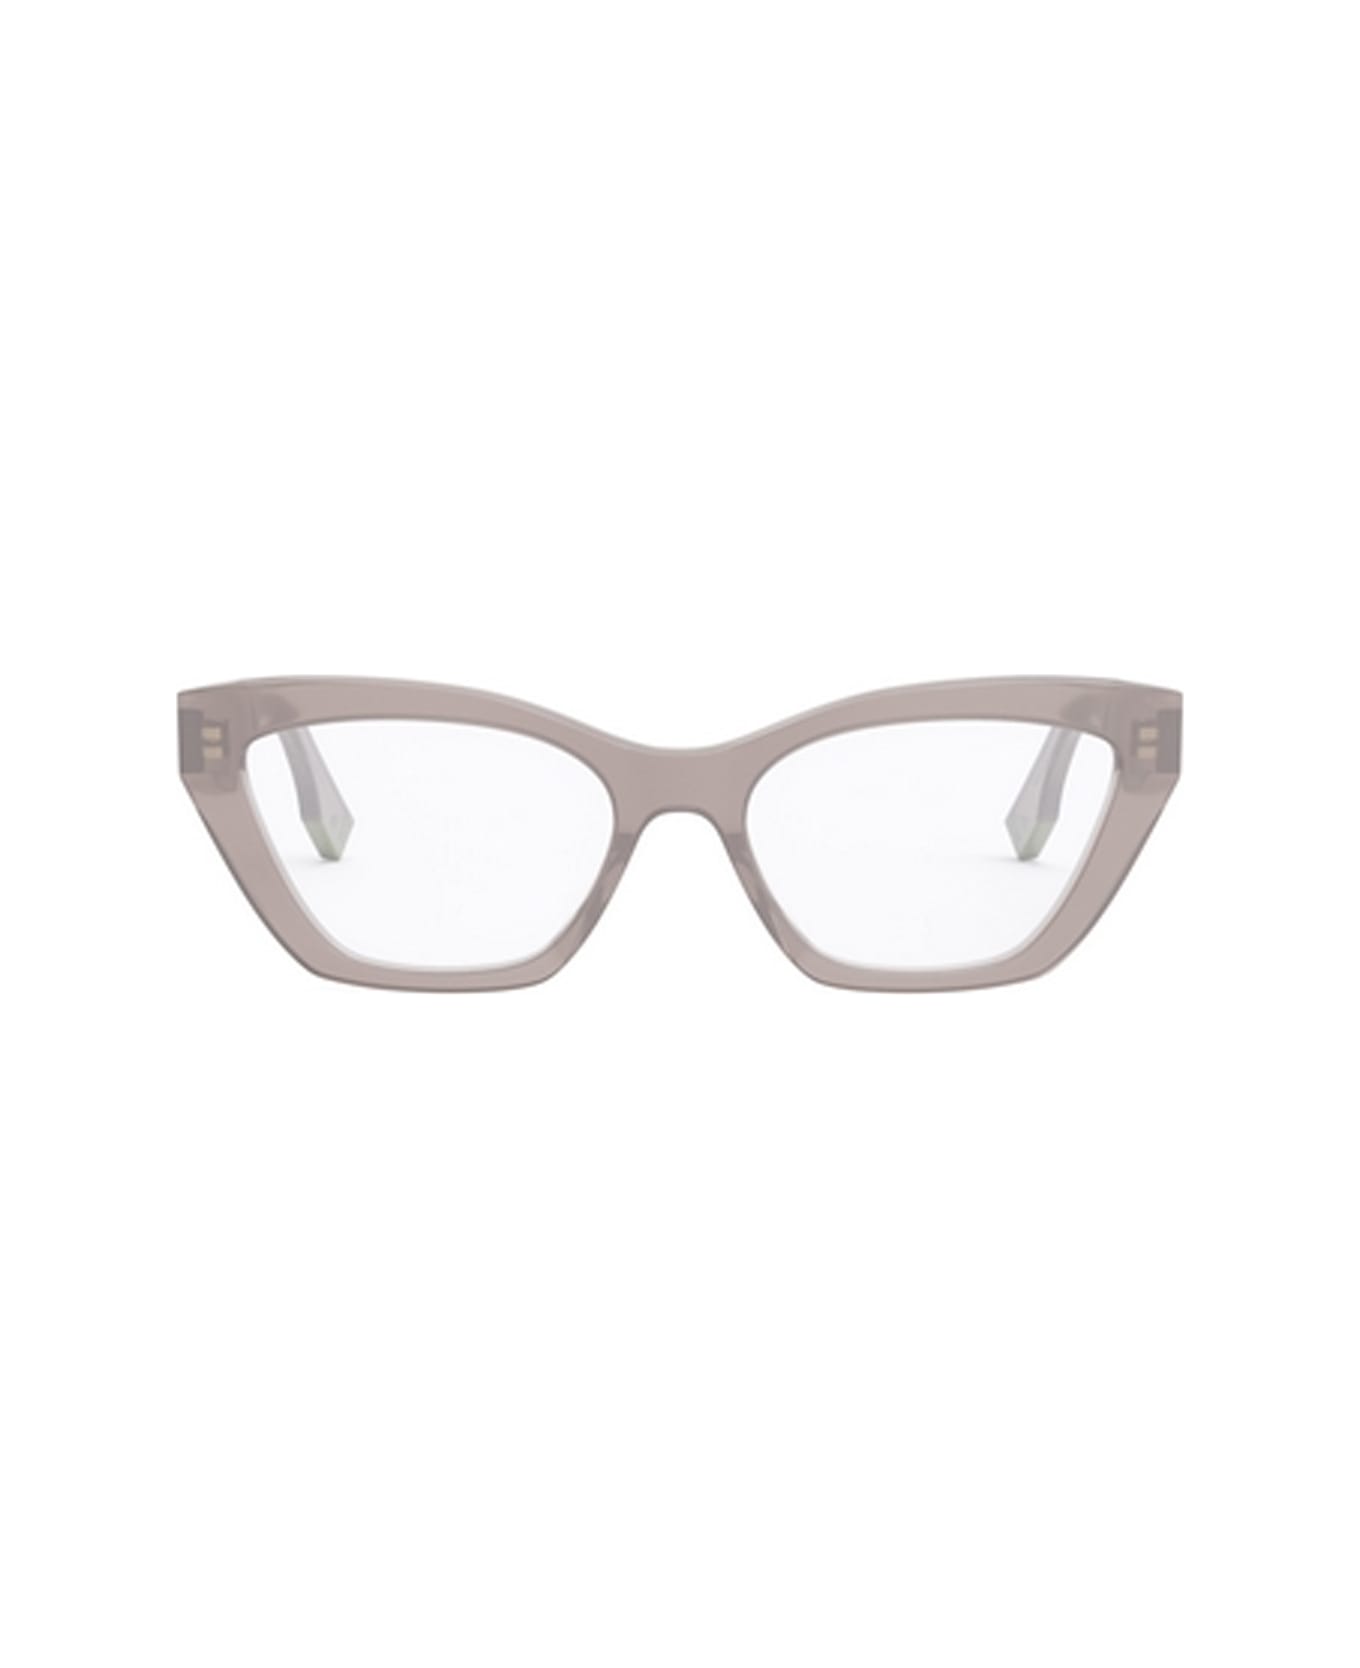 Fendi Eyewear Fe50067i 072 Glasses - 072 アイウェア